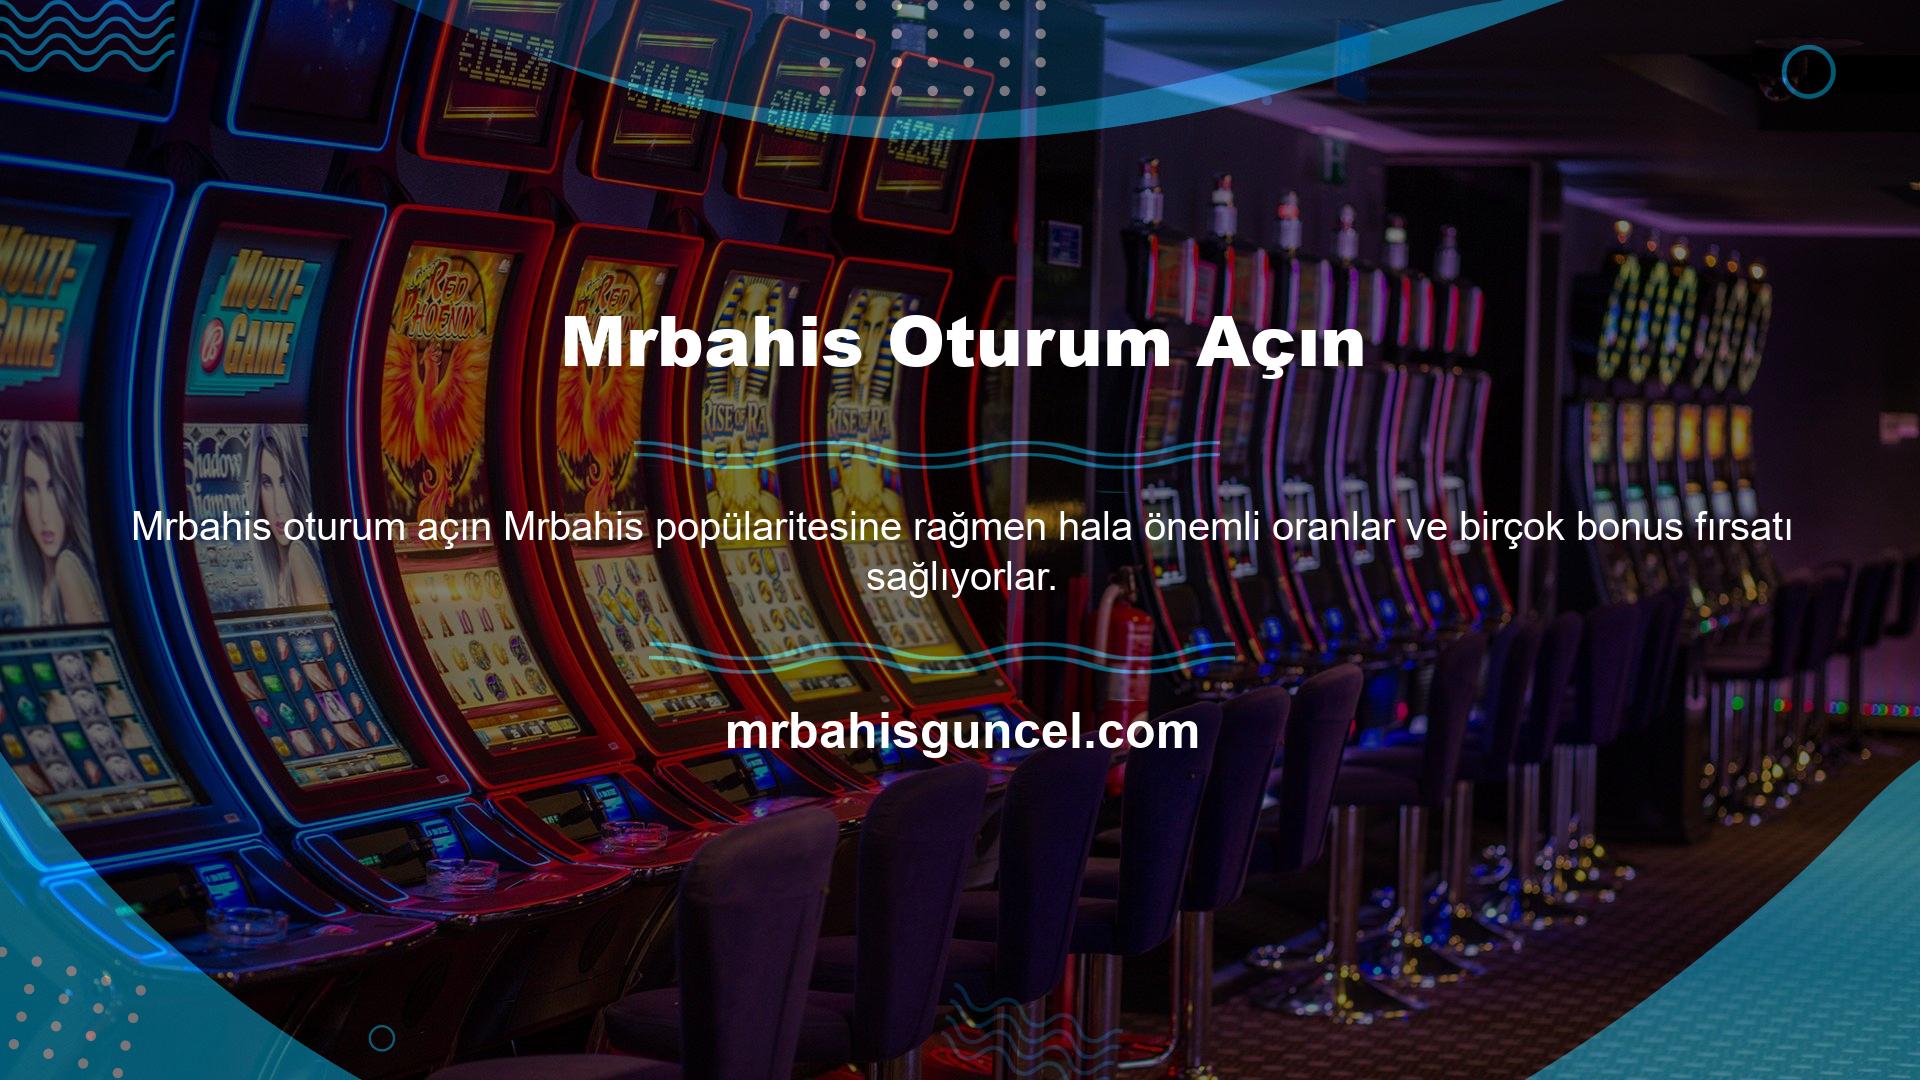 Bir Mrbahis casino sitesi olan Mrbahis, herhangi bir ulusal kısıtlama olmaksızın üyelerin kullanımına açıktır